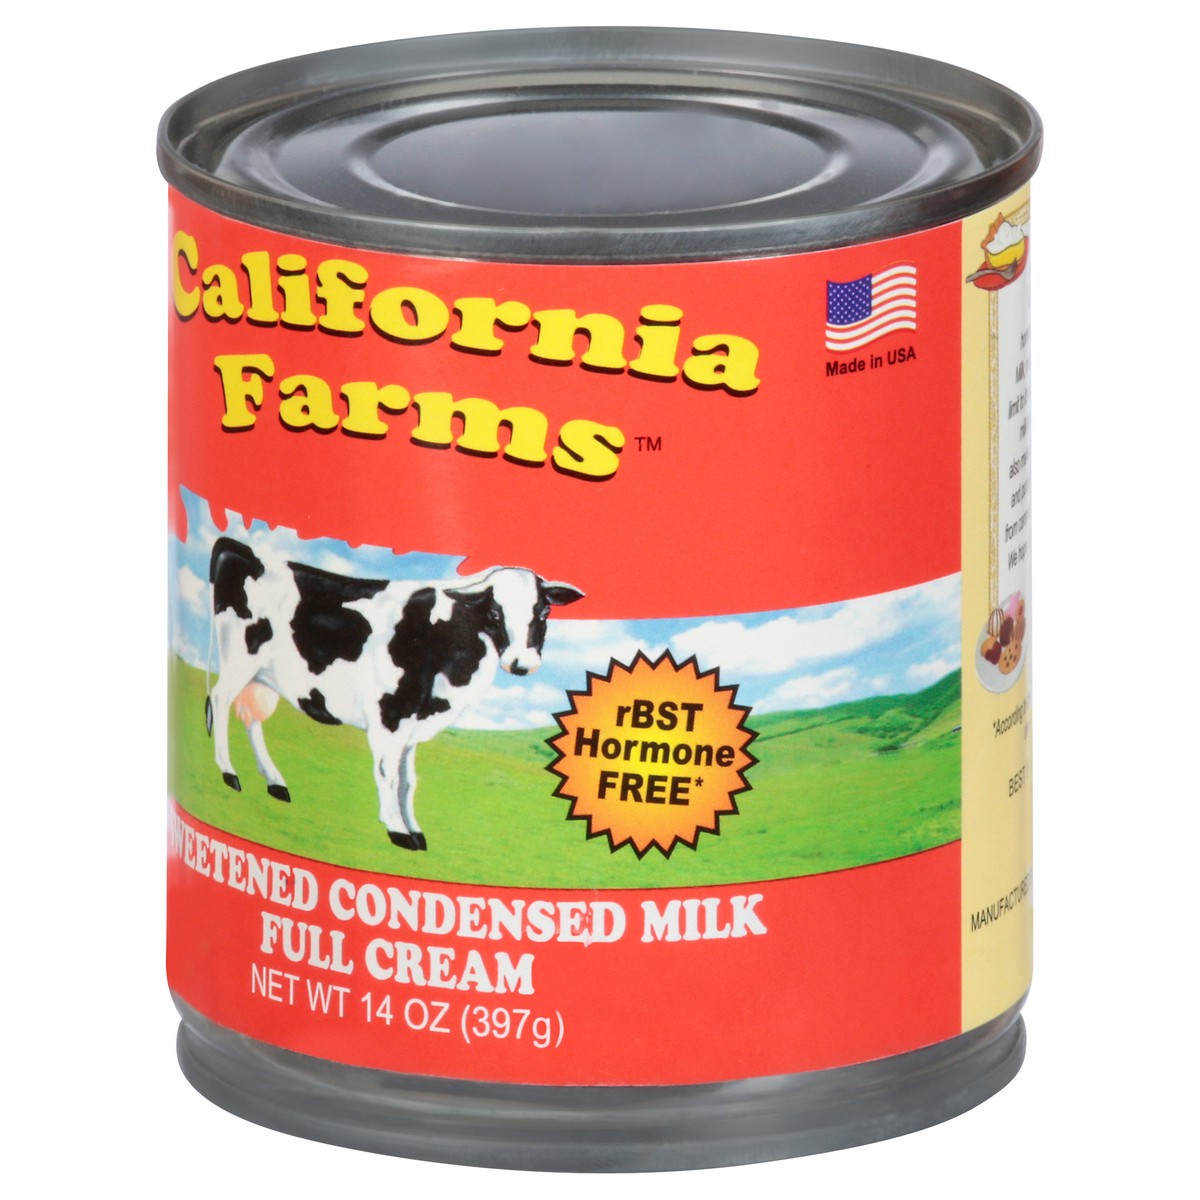 slide 7 of 14, California Farms Sweetened Condensed Milk Full Cream, 14 oz